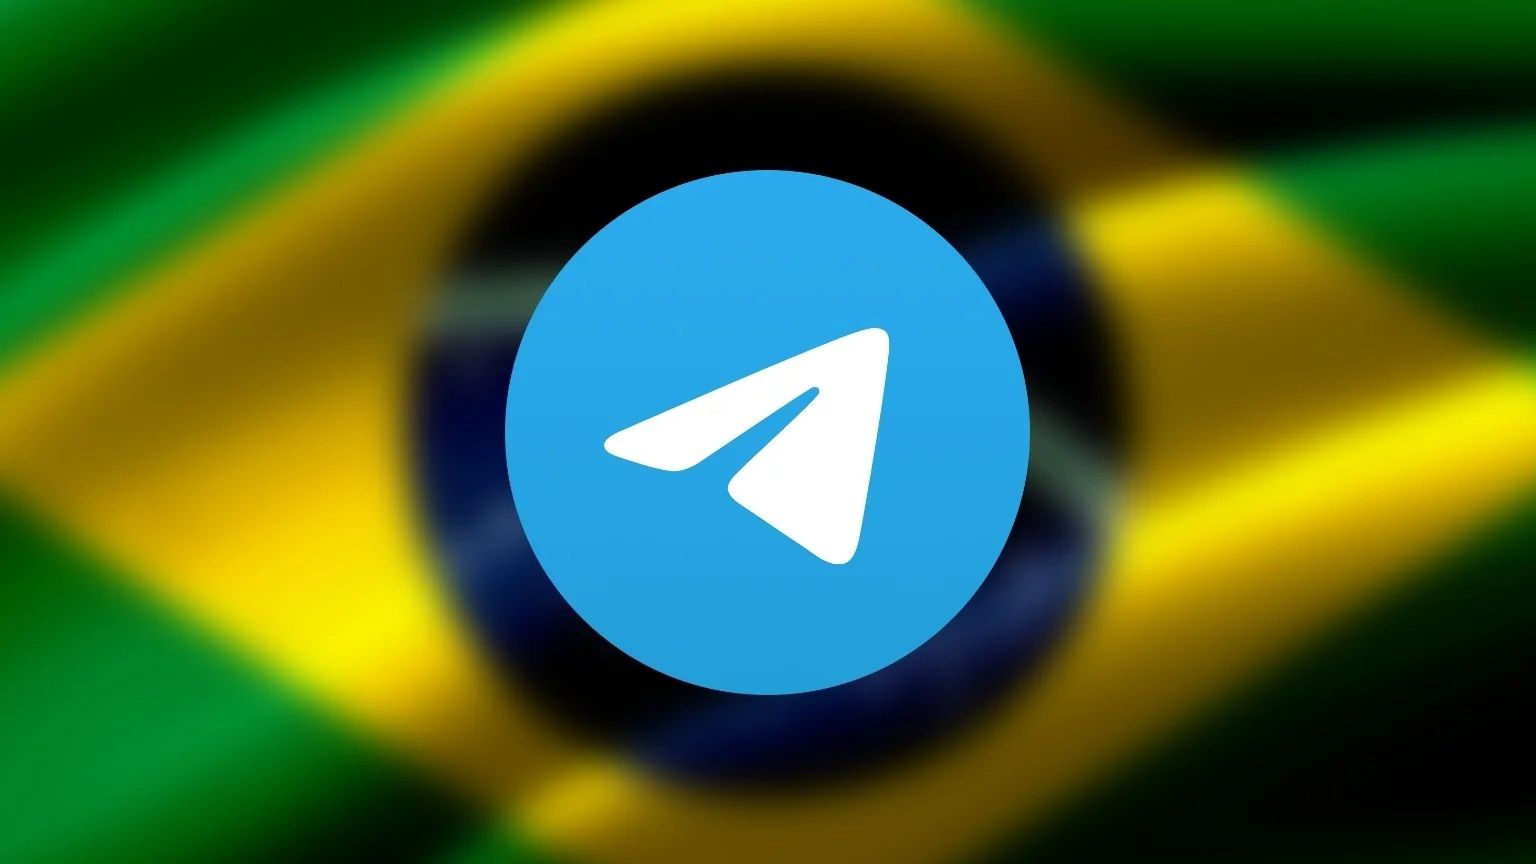 تلگرام در این کشور فیلتر شد
